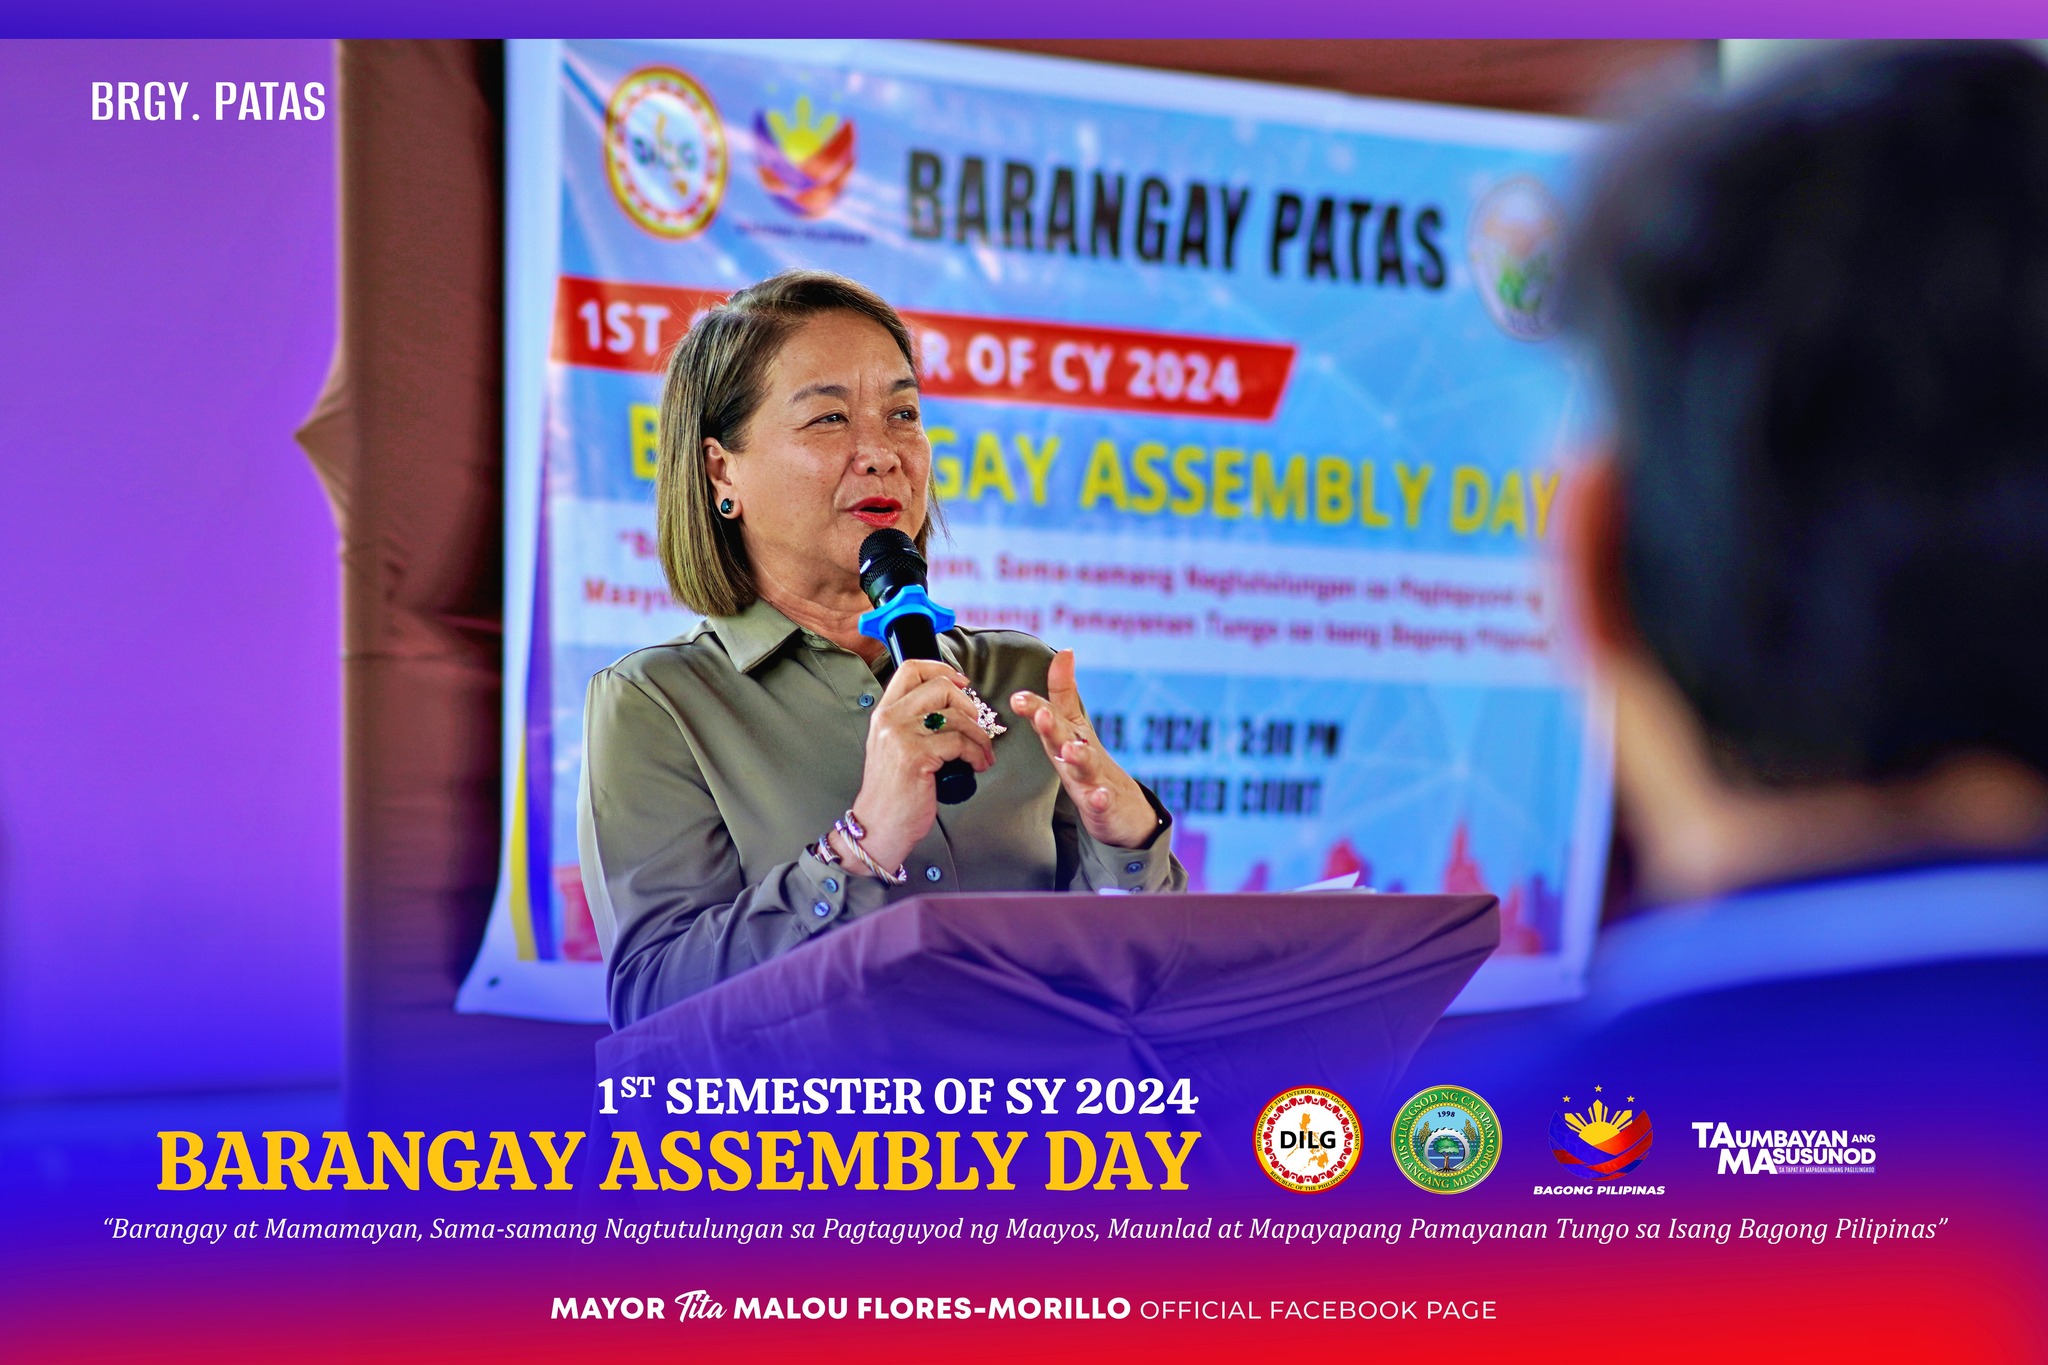 Barangay Assembly ng Patas, Malamig at Sta. Rita, Dinaluhan ni Mayor Morillo